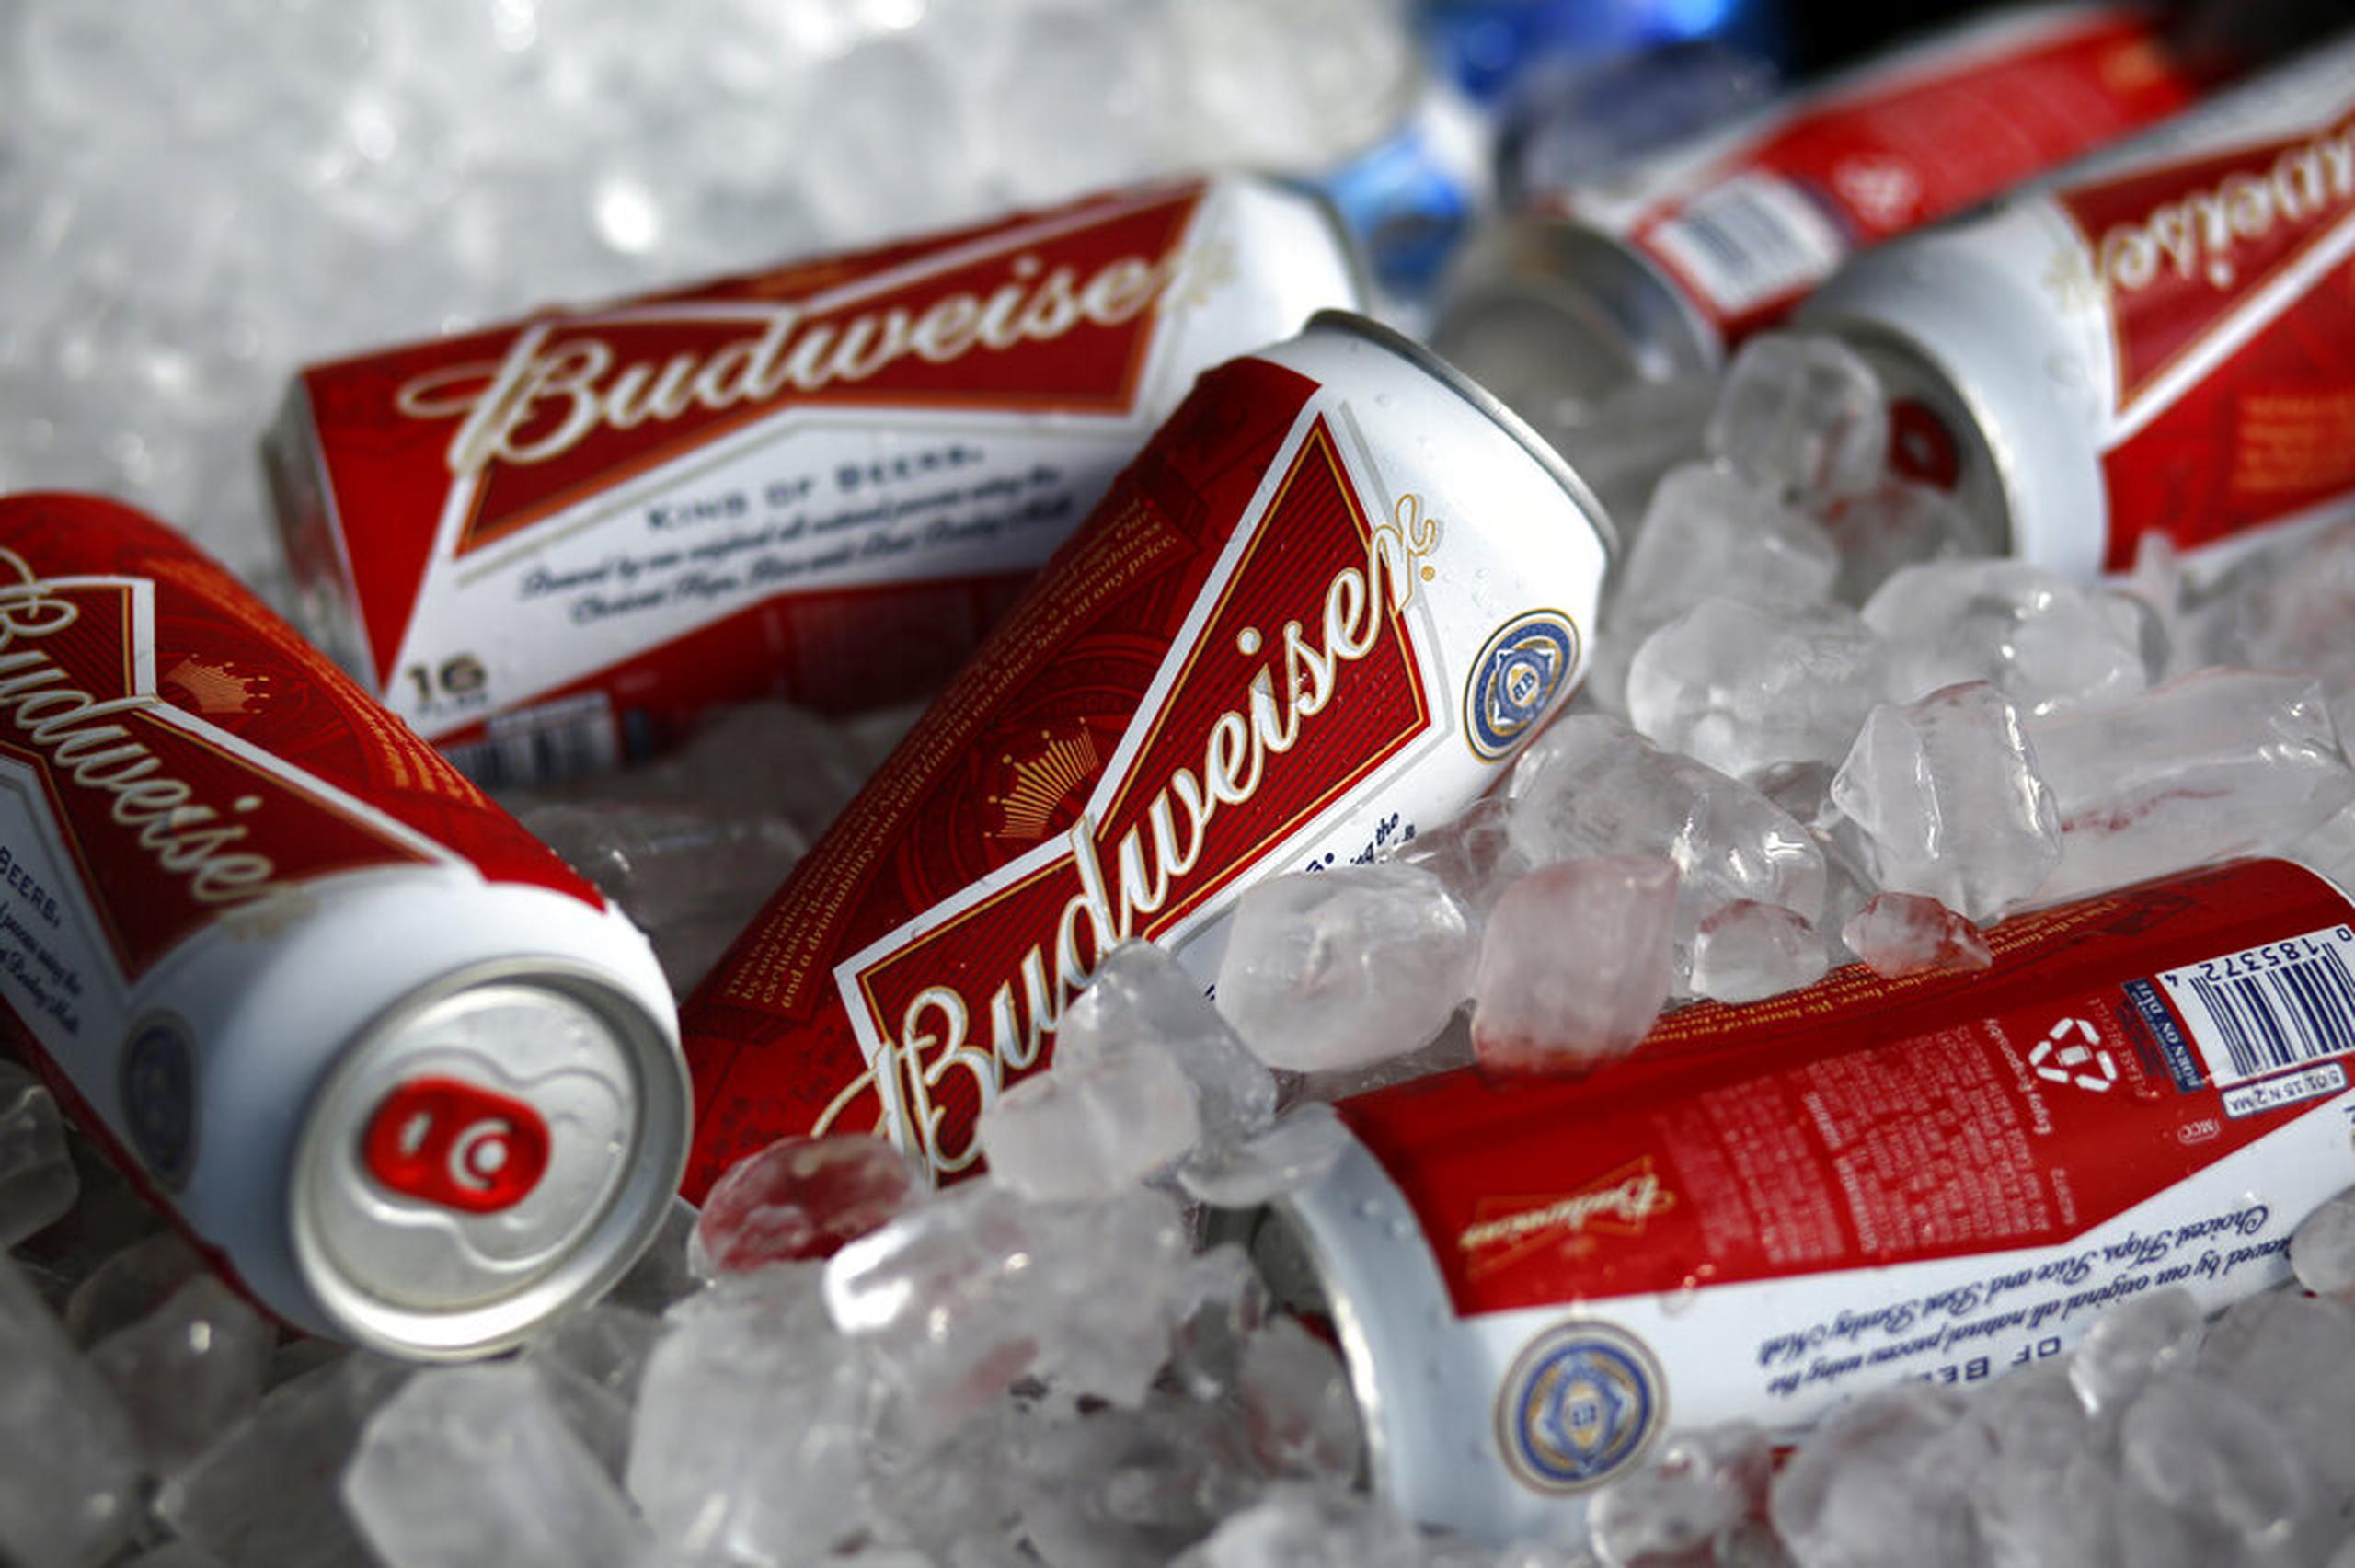 AB InBev, dueña de Budweiser, desembolsa decenas de millones de dólares en los mundiales por los derechos exclusivos de vender cerveza.